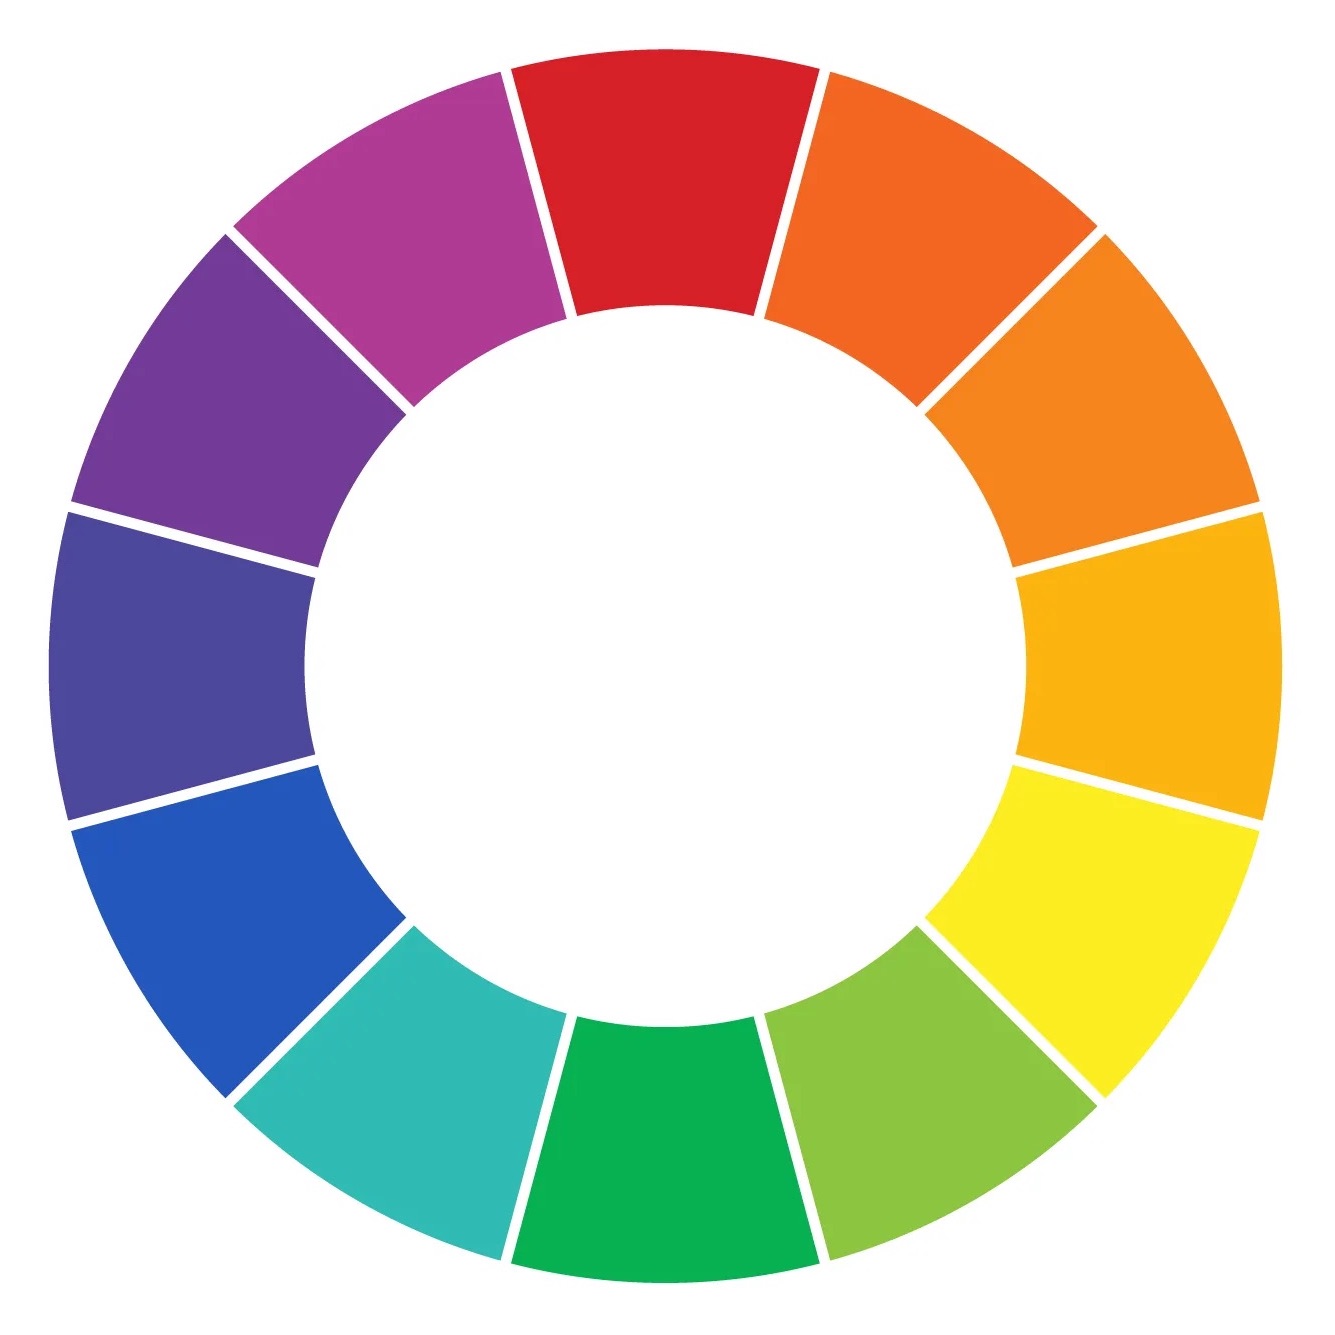 A colour wheel chart